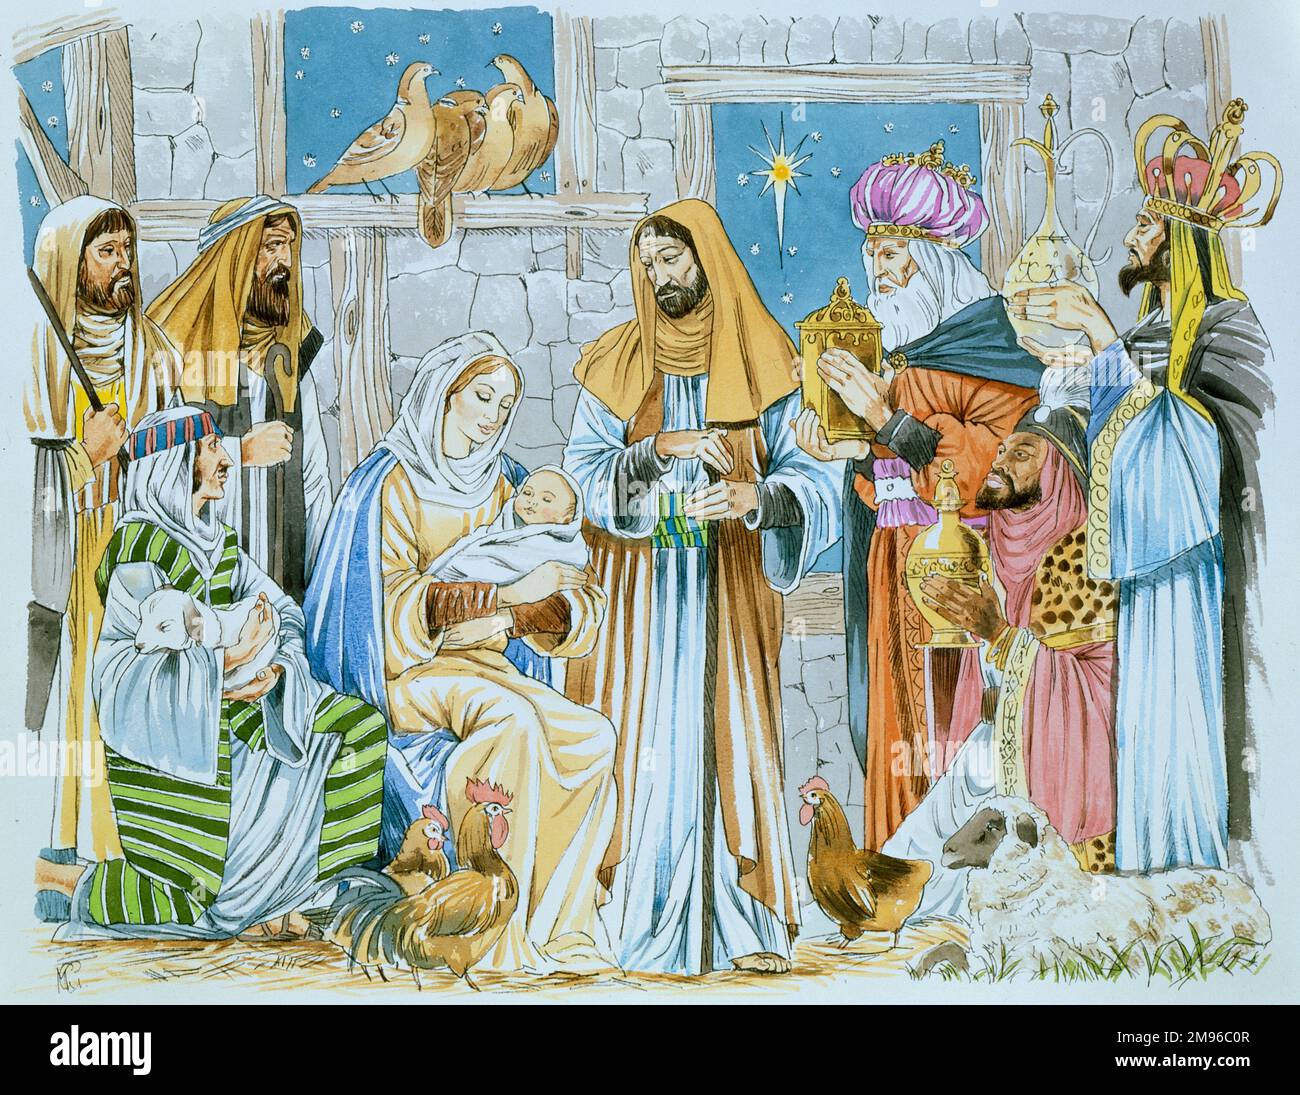 Eine Weihnachtsszene mit den drei Königen, die Geschenke für das Jesuskind bringen. Stockfoto